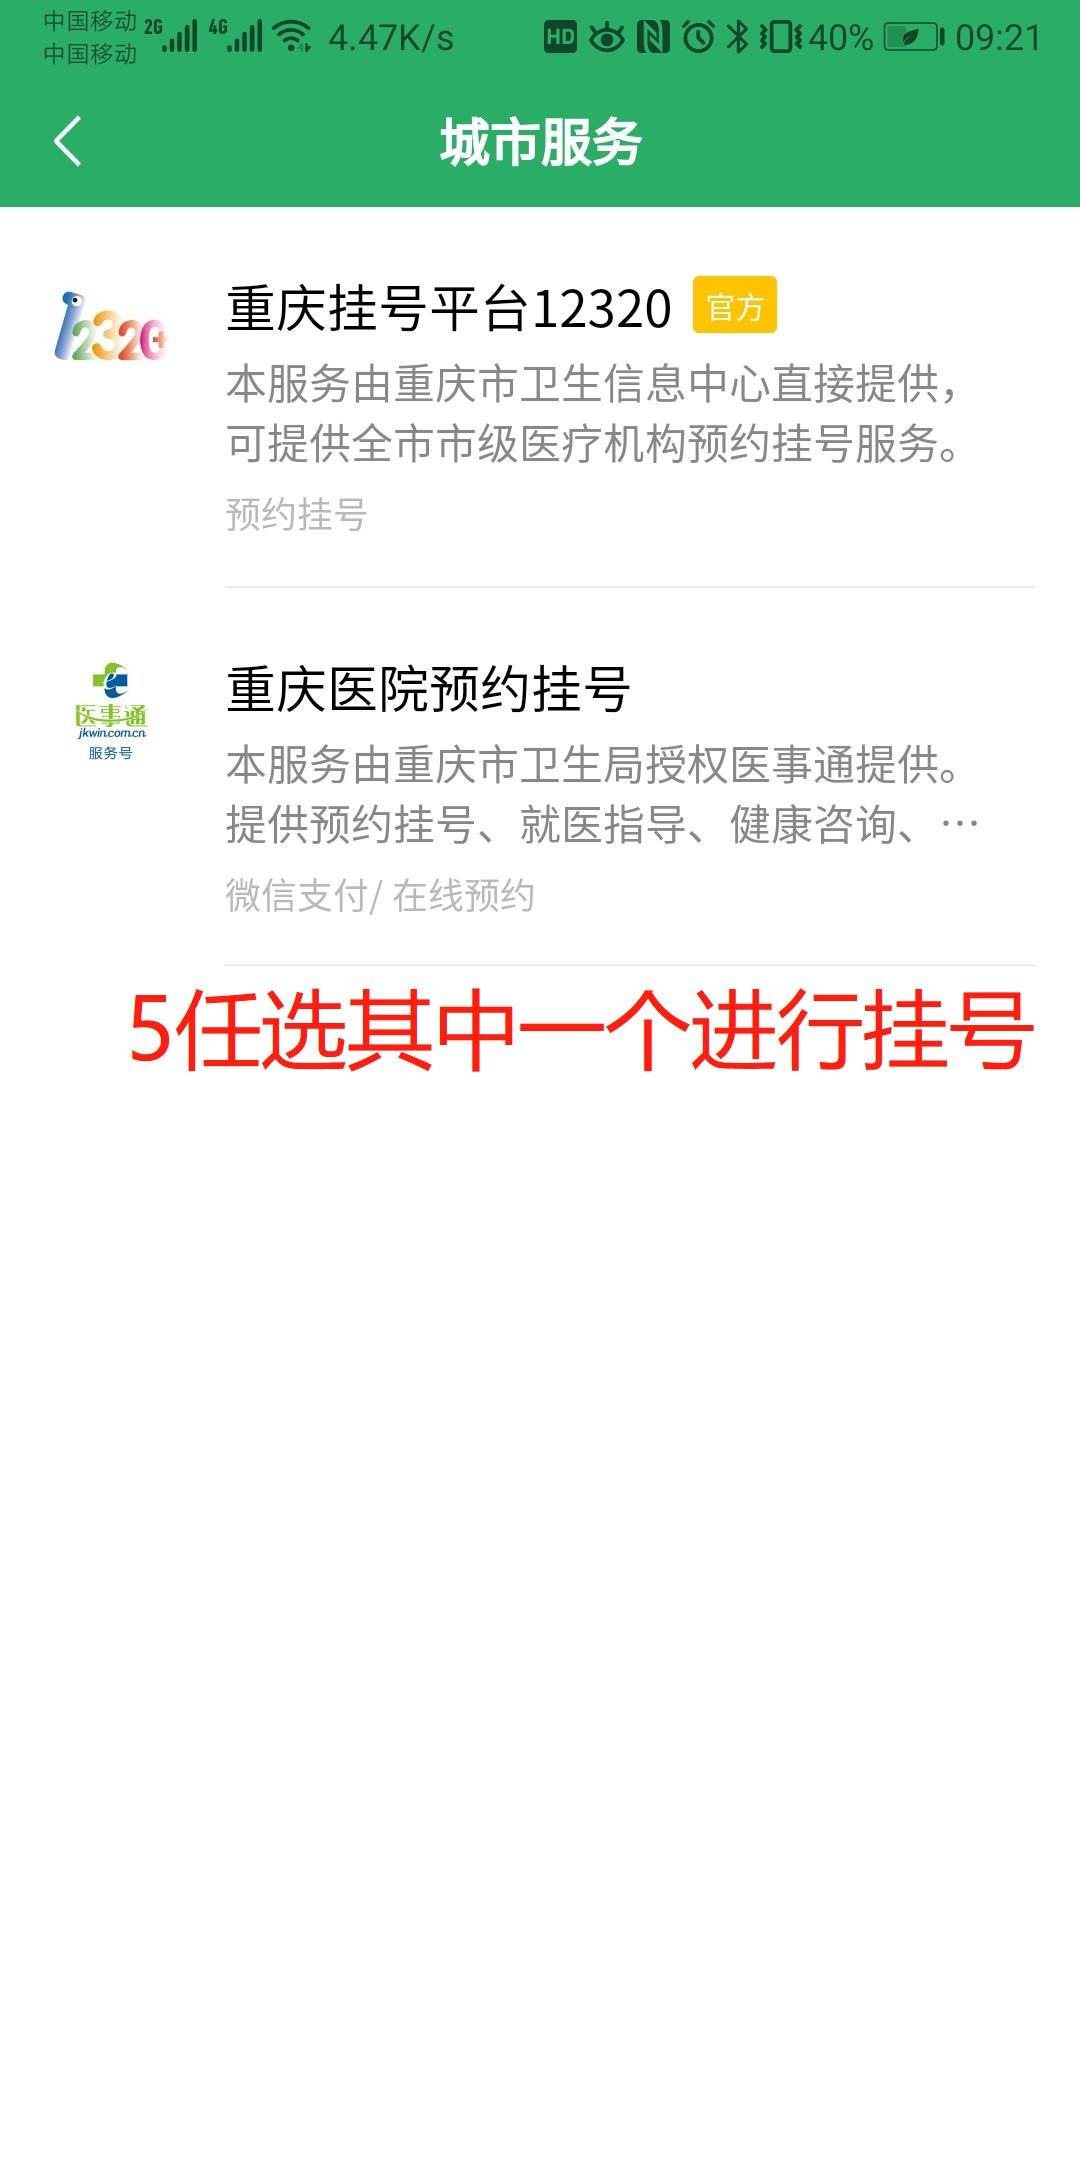 关于四惠中医医院号贩子—加微信咨询挂号!方式行业领先的信息